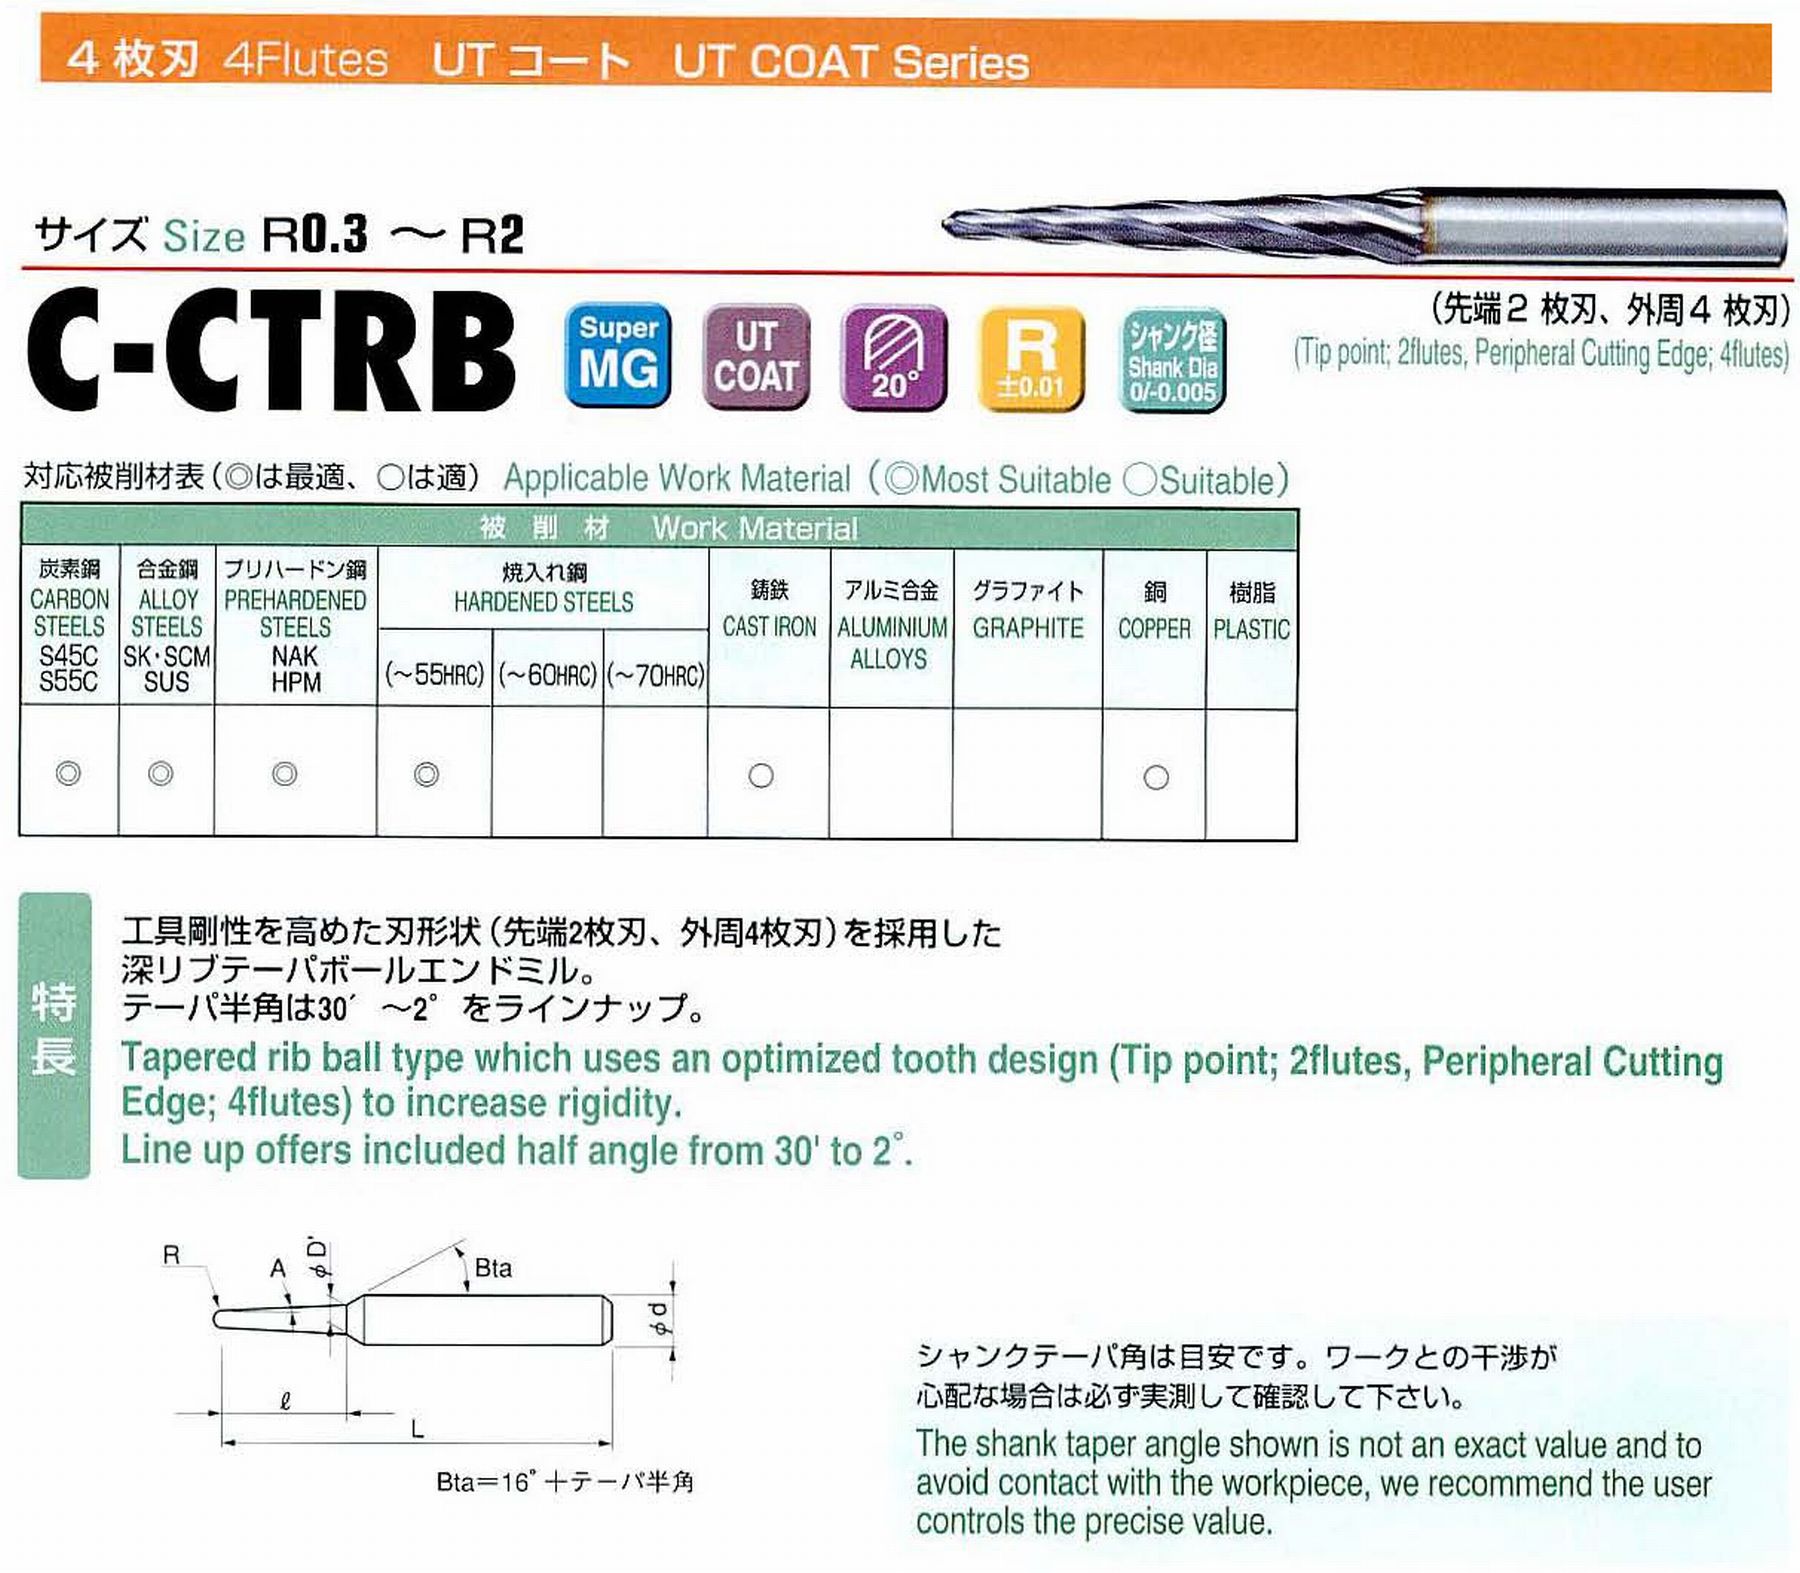 ユニオンツール 4枚刃 C-CTRB4008-8-1 ボール半径R0.4 テーパ半角30′ 刃長8 大端径0.93 全長38 シャンク径3